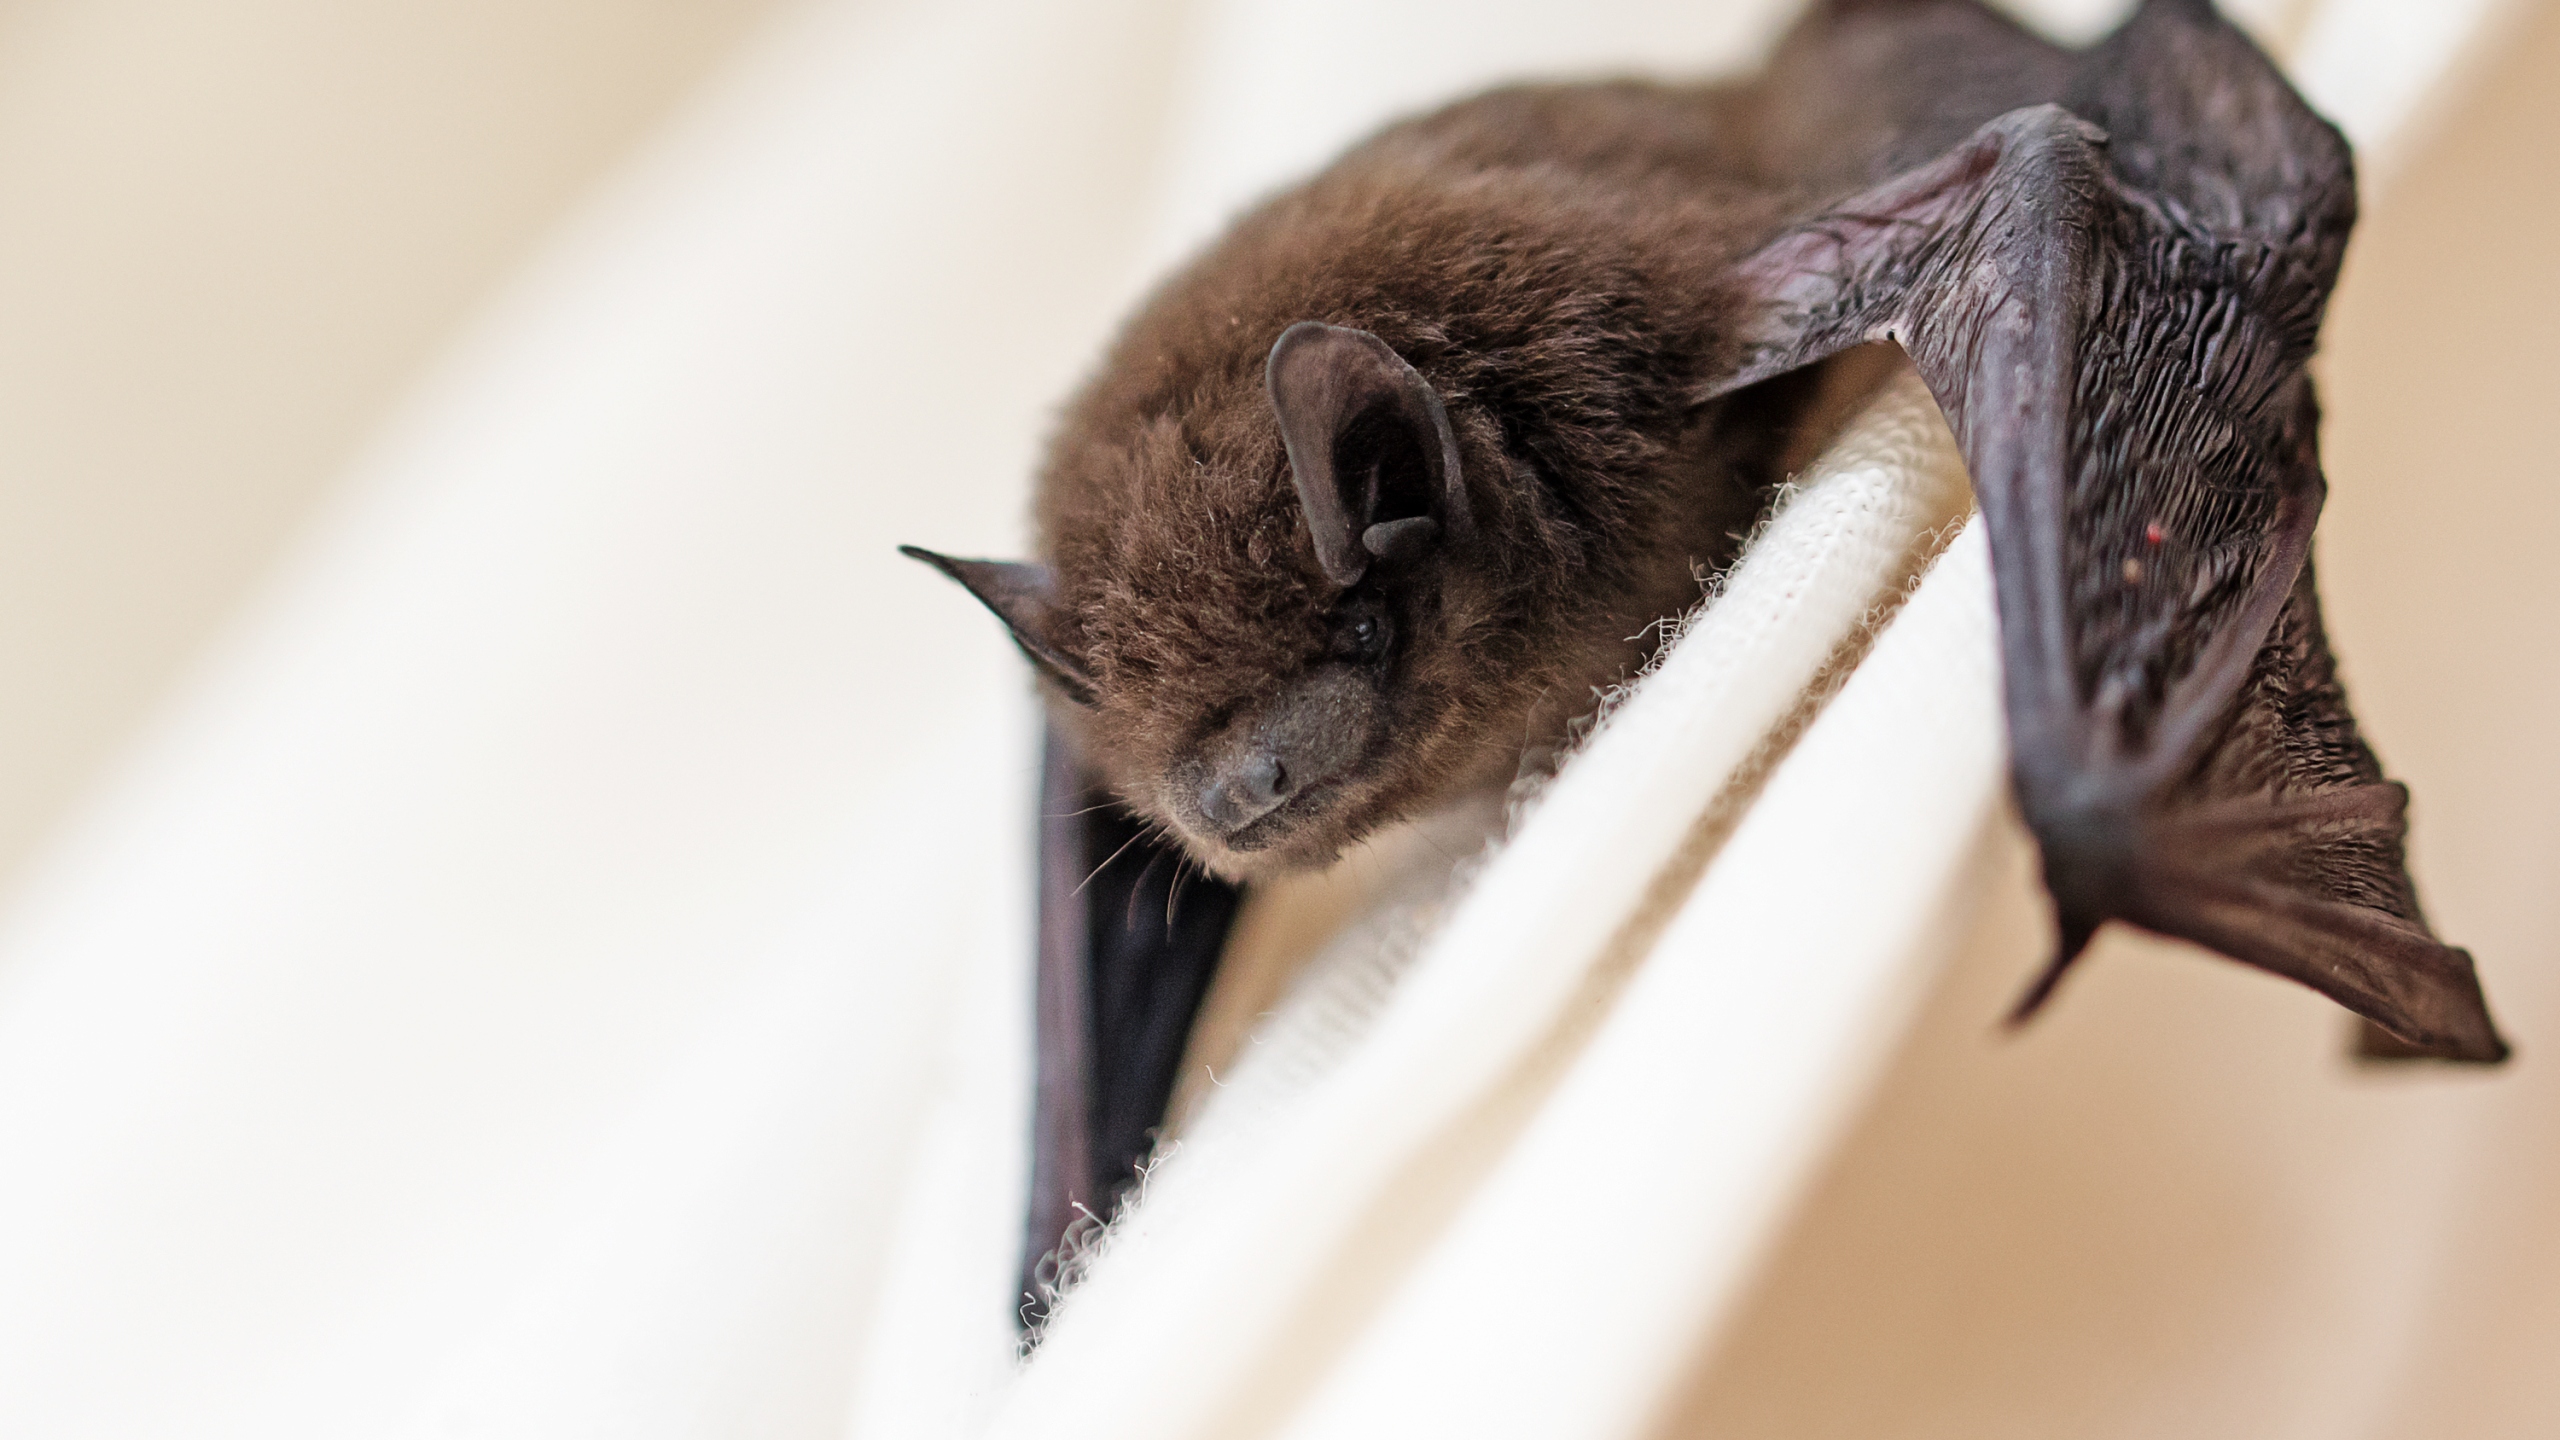 Rabid bat bites Savannah resident